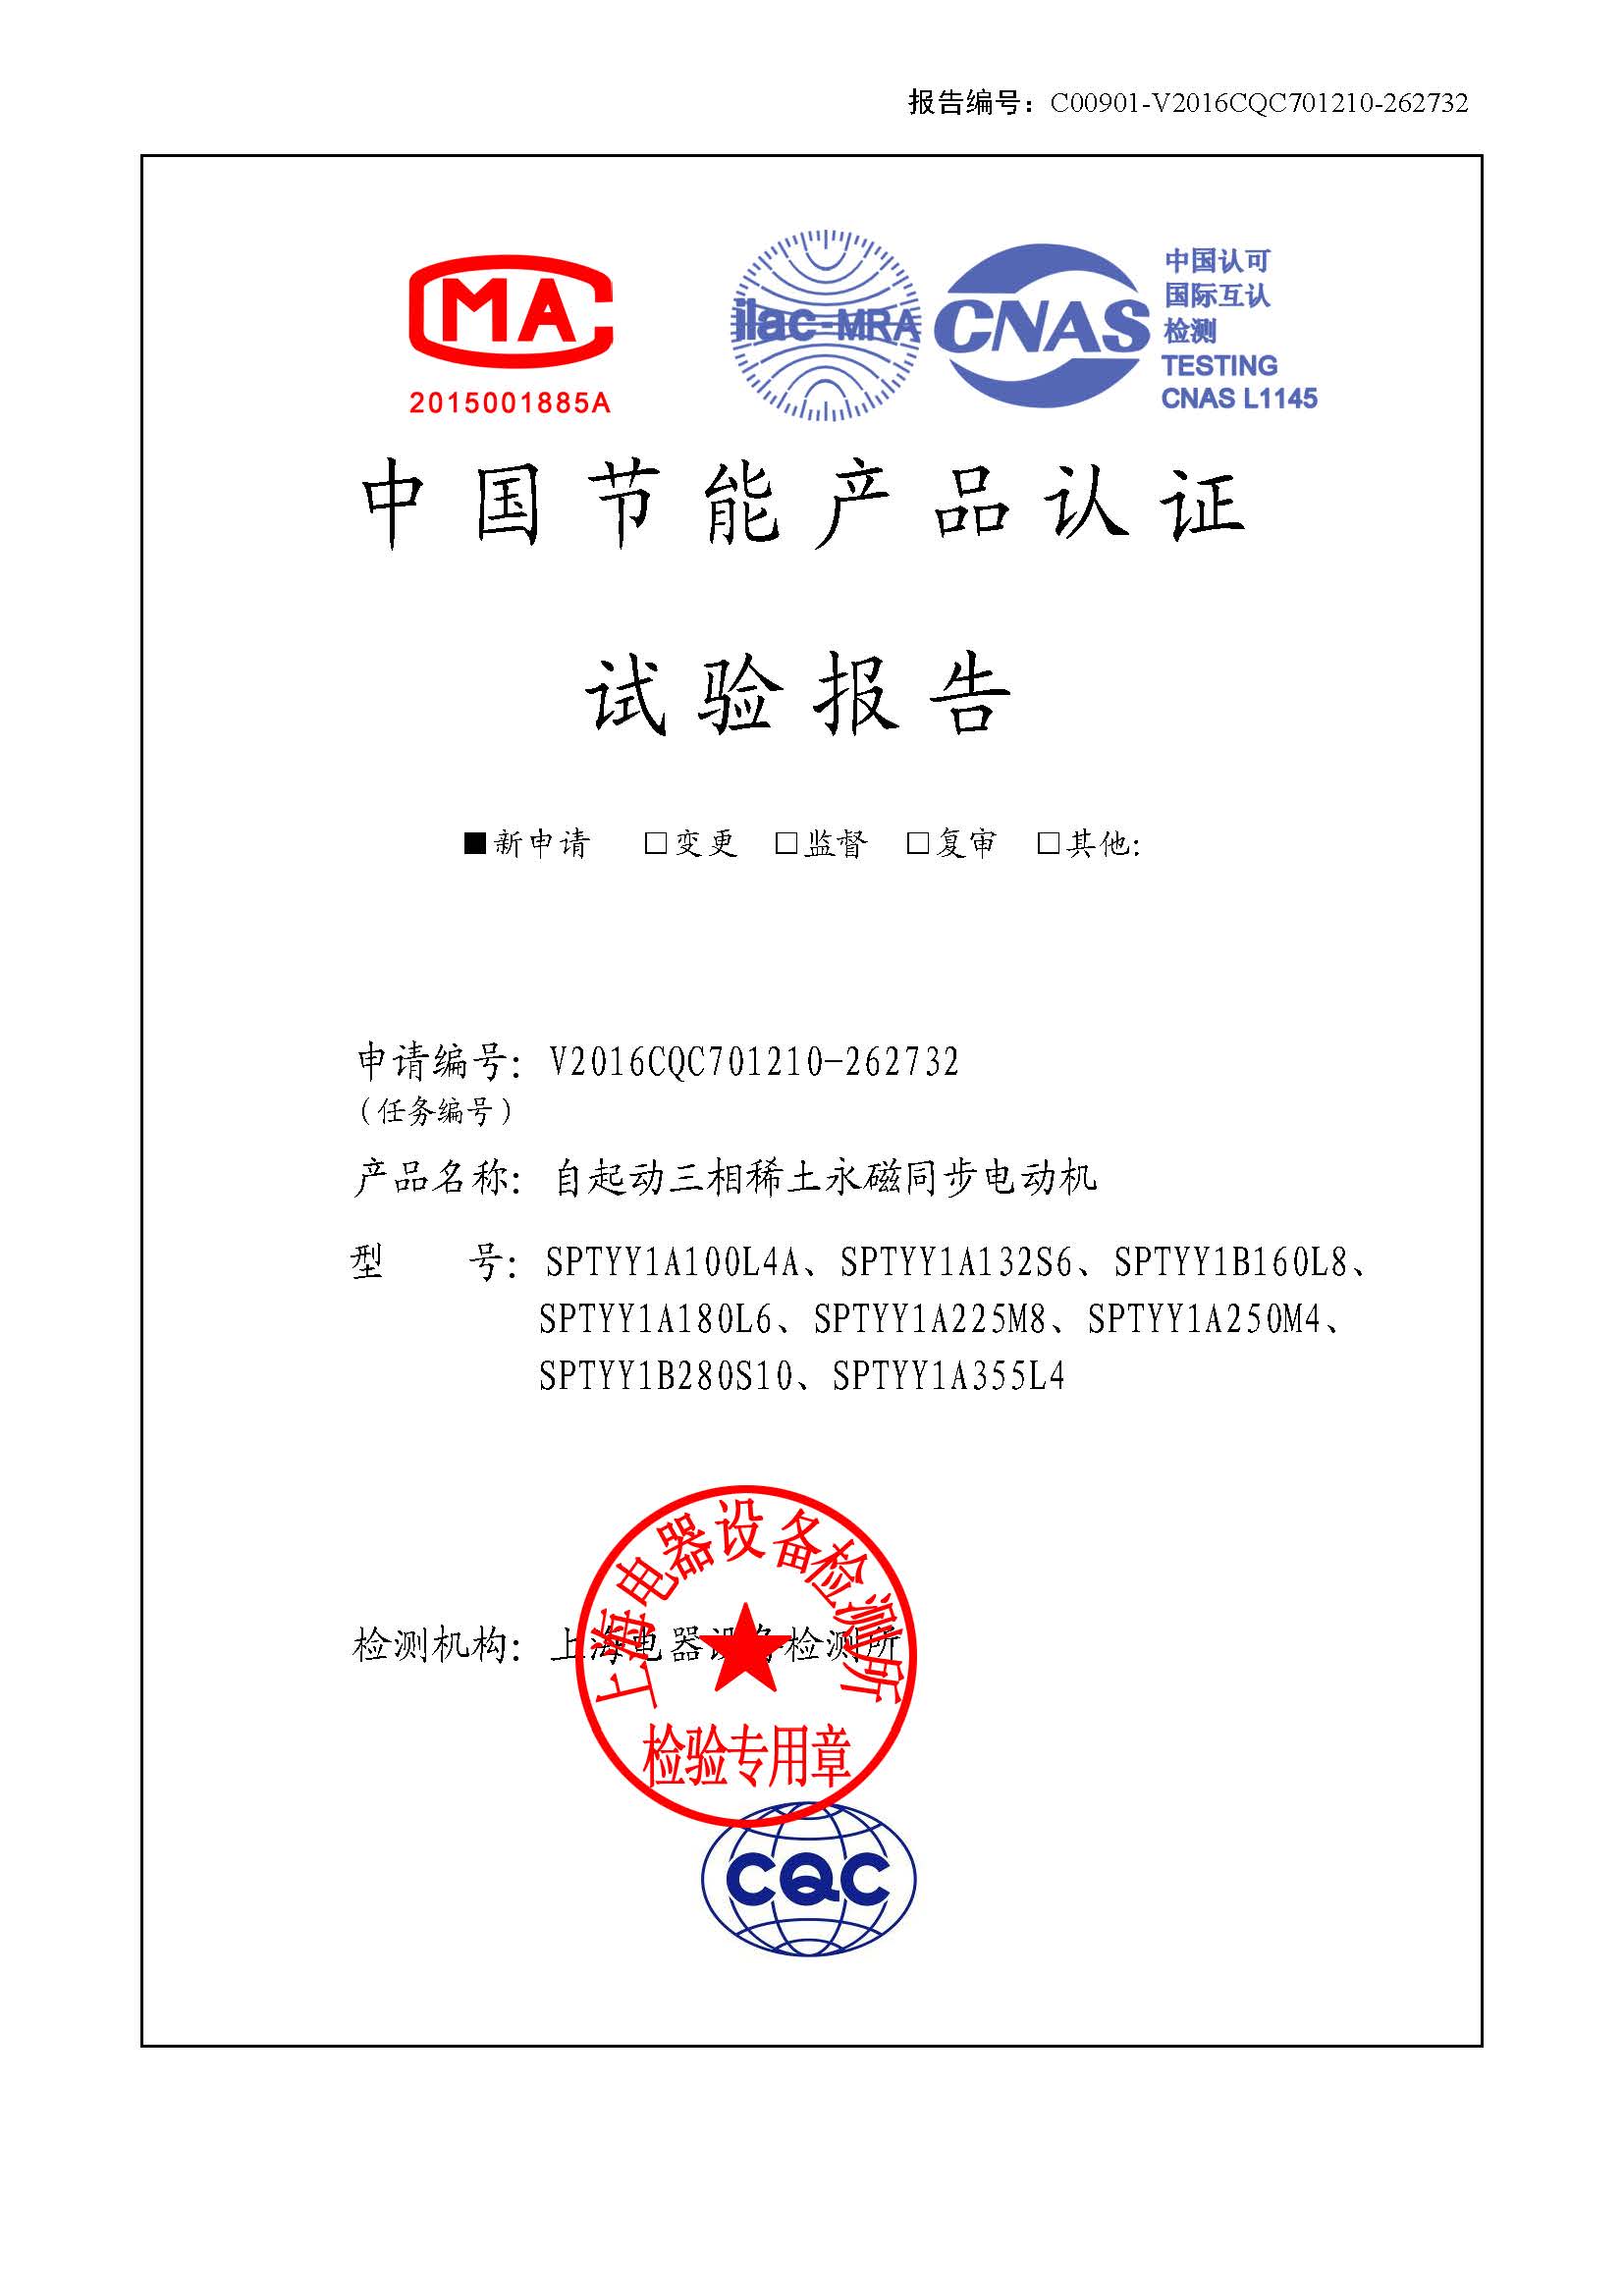 湖北华电武昌热电有限公司高压电机节能技术改造试验项目